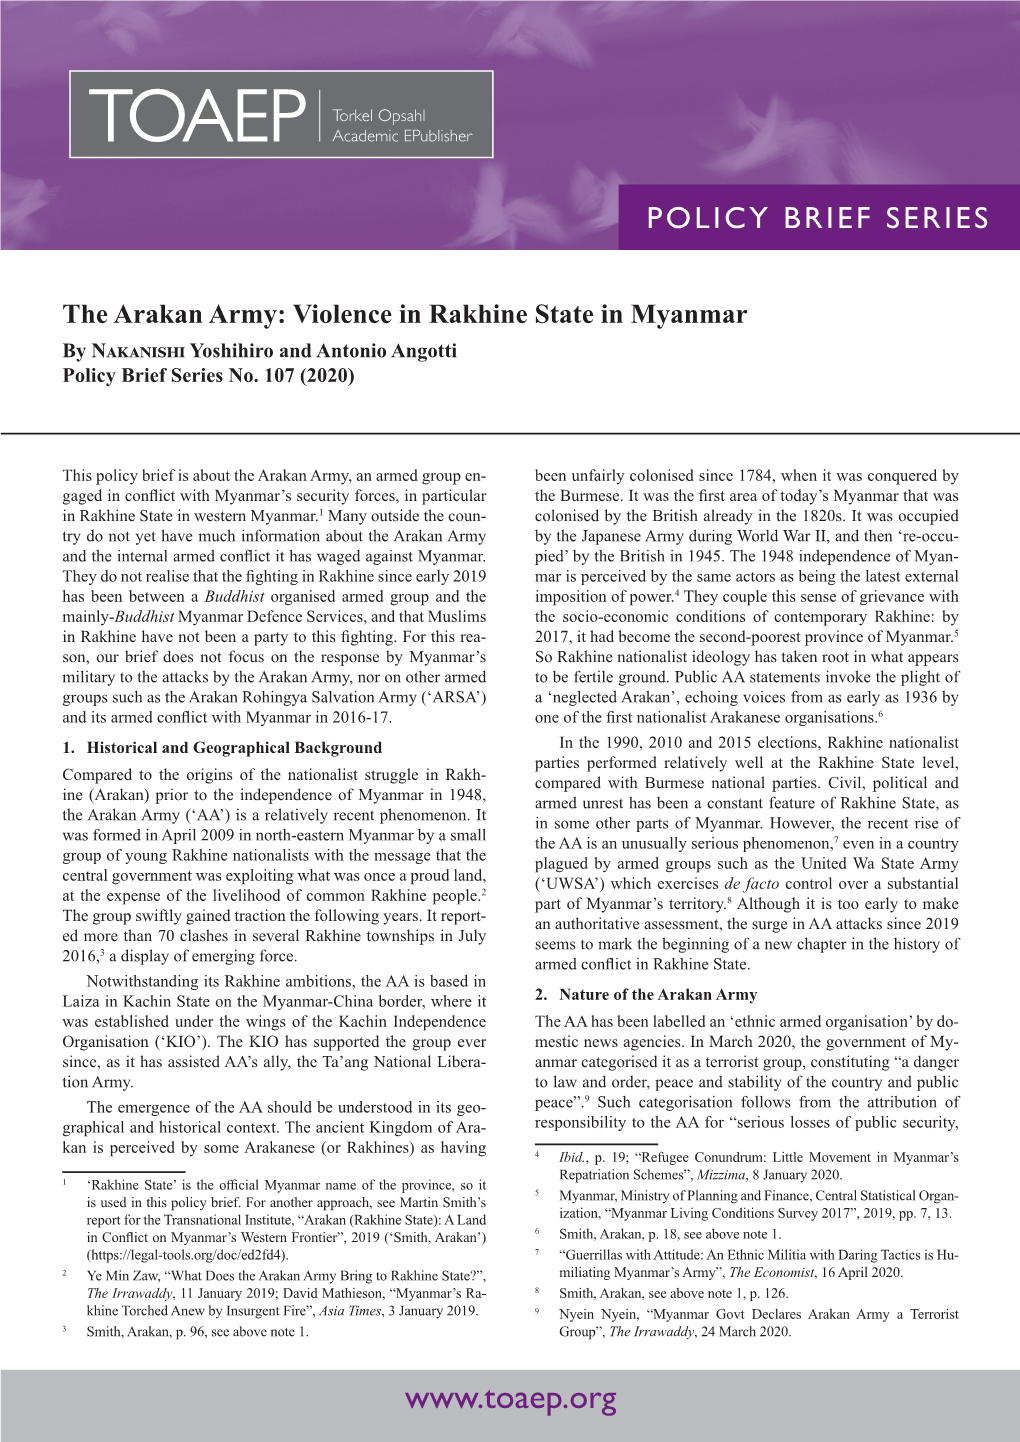 The Arakan Army: Violence in Rakhine State in Myanmar by Nakanishi Yoshihiro and Antonio Angotti Policy Brief Series No